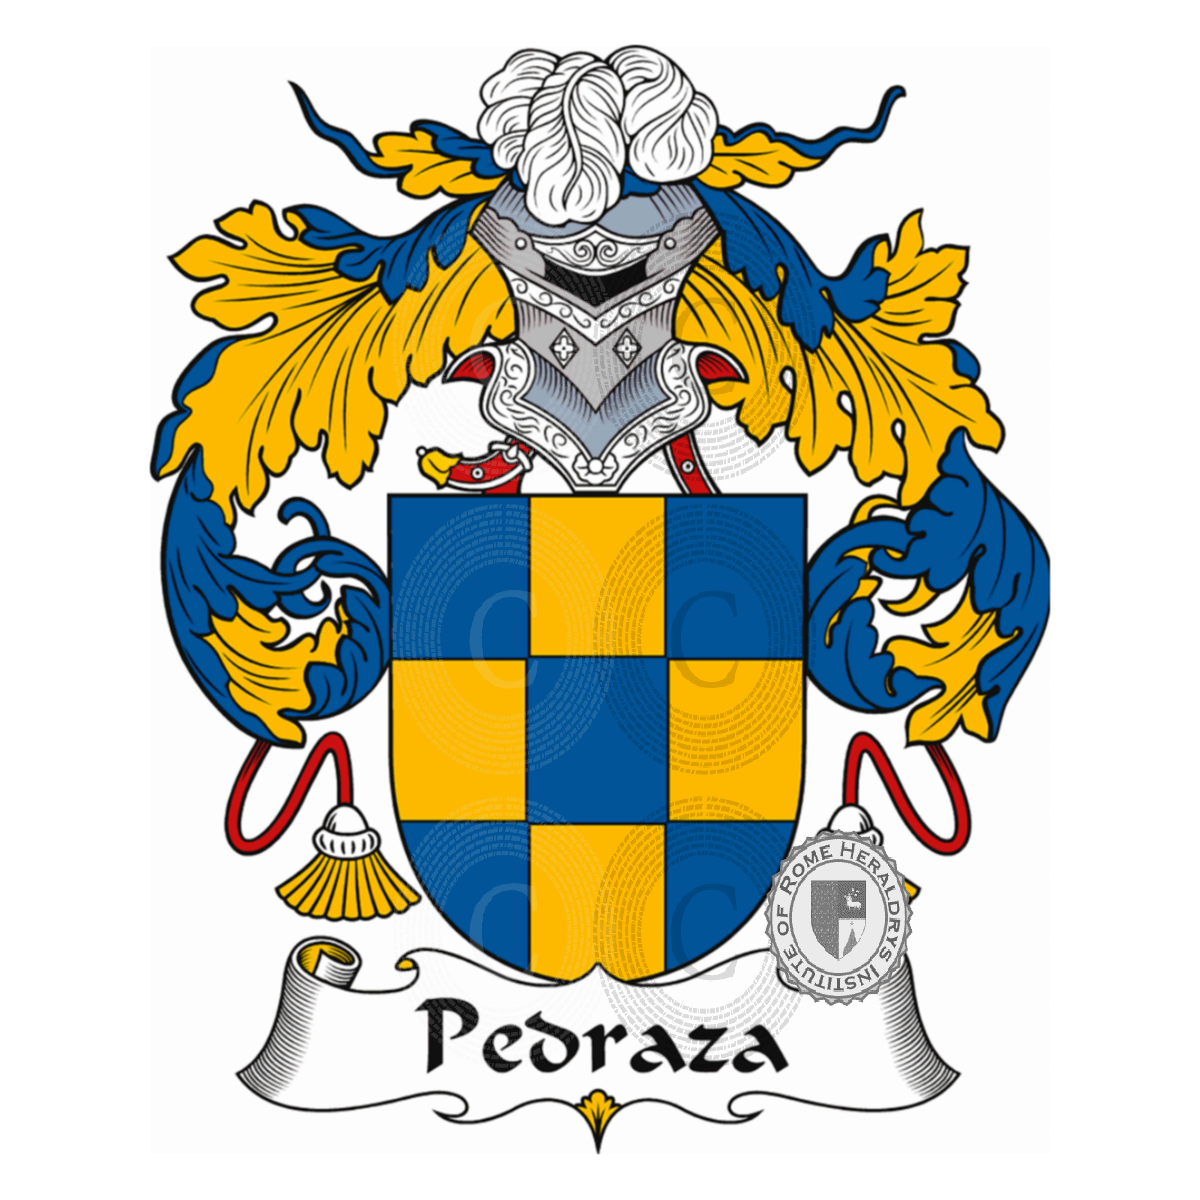 Wappen der FamiliePedraza